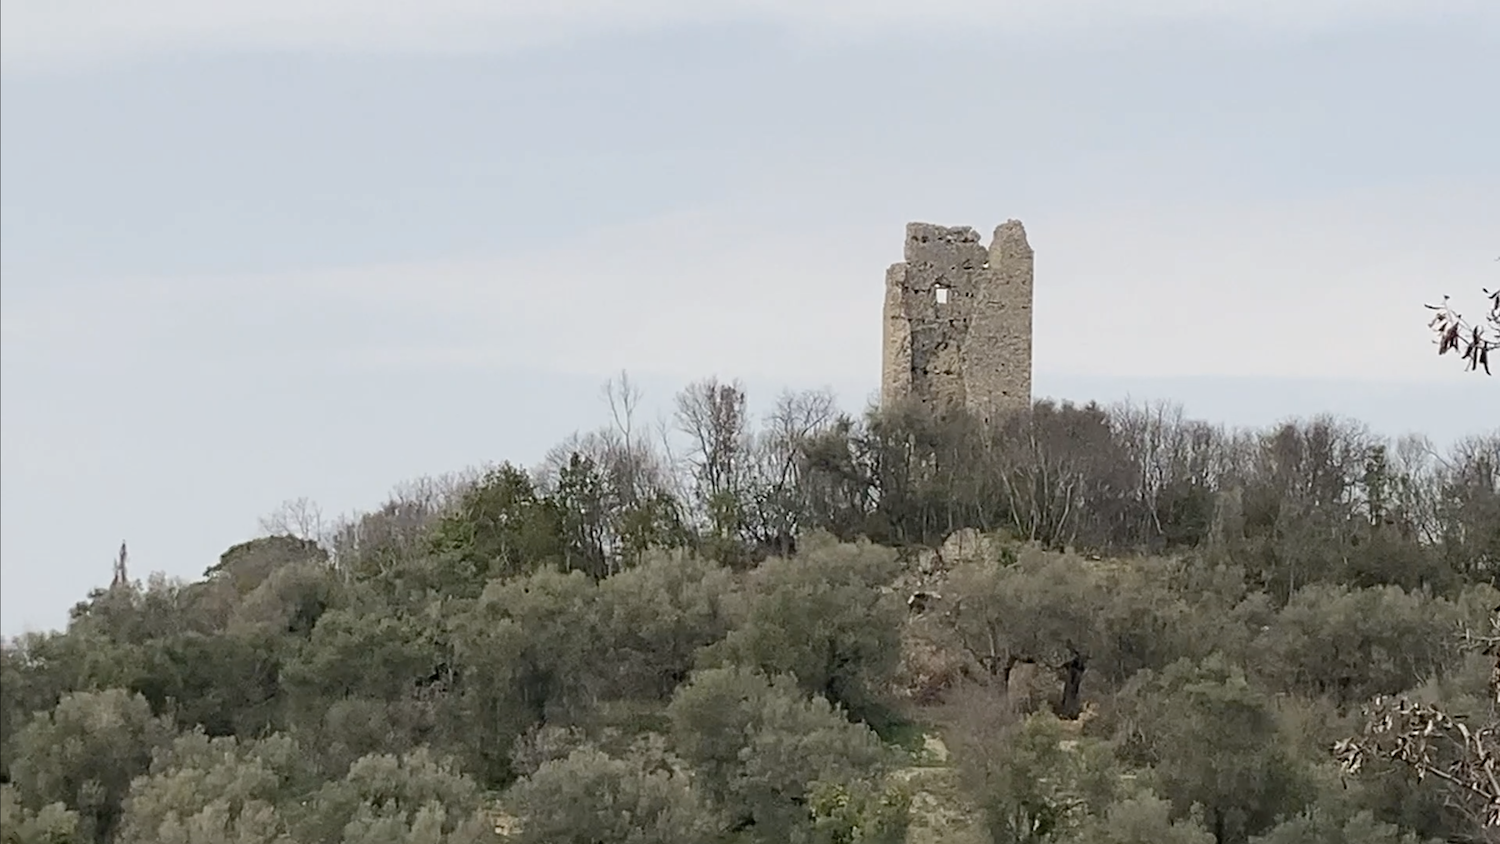 La torre di avvistamento che sovrasta il lago e la valle sottostante, detta anche Castello Postmontem, è appartenuta alla potente Abbazia di Farfa